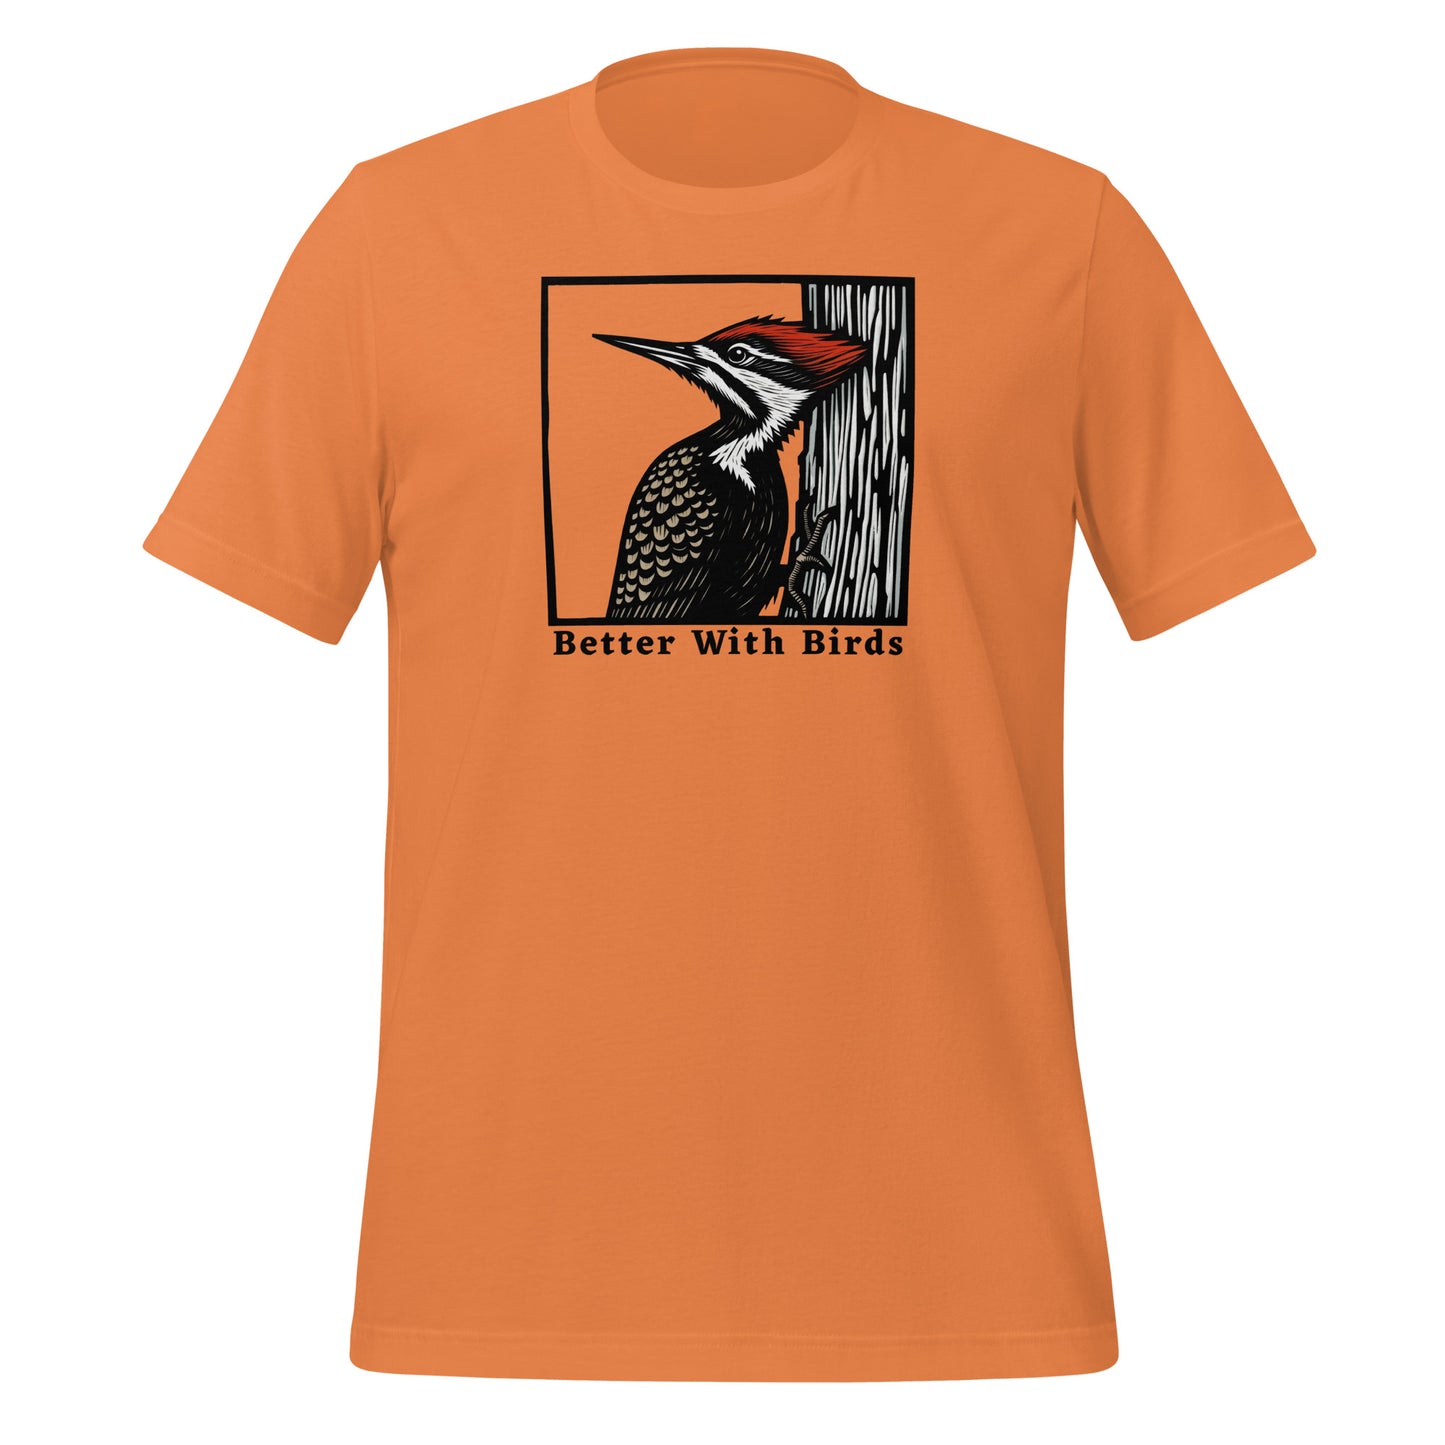 Pileated Woodpecker Lightweight Cotton Unisex T-Shirt